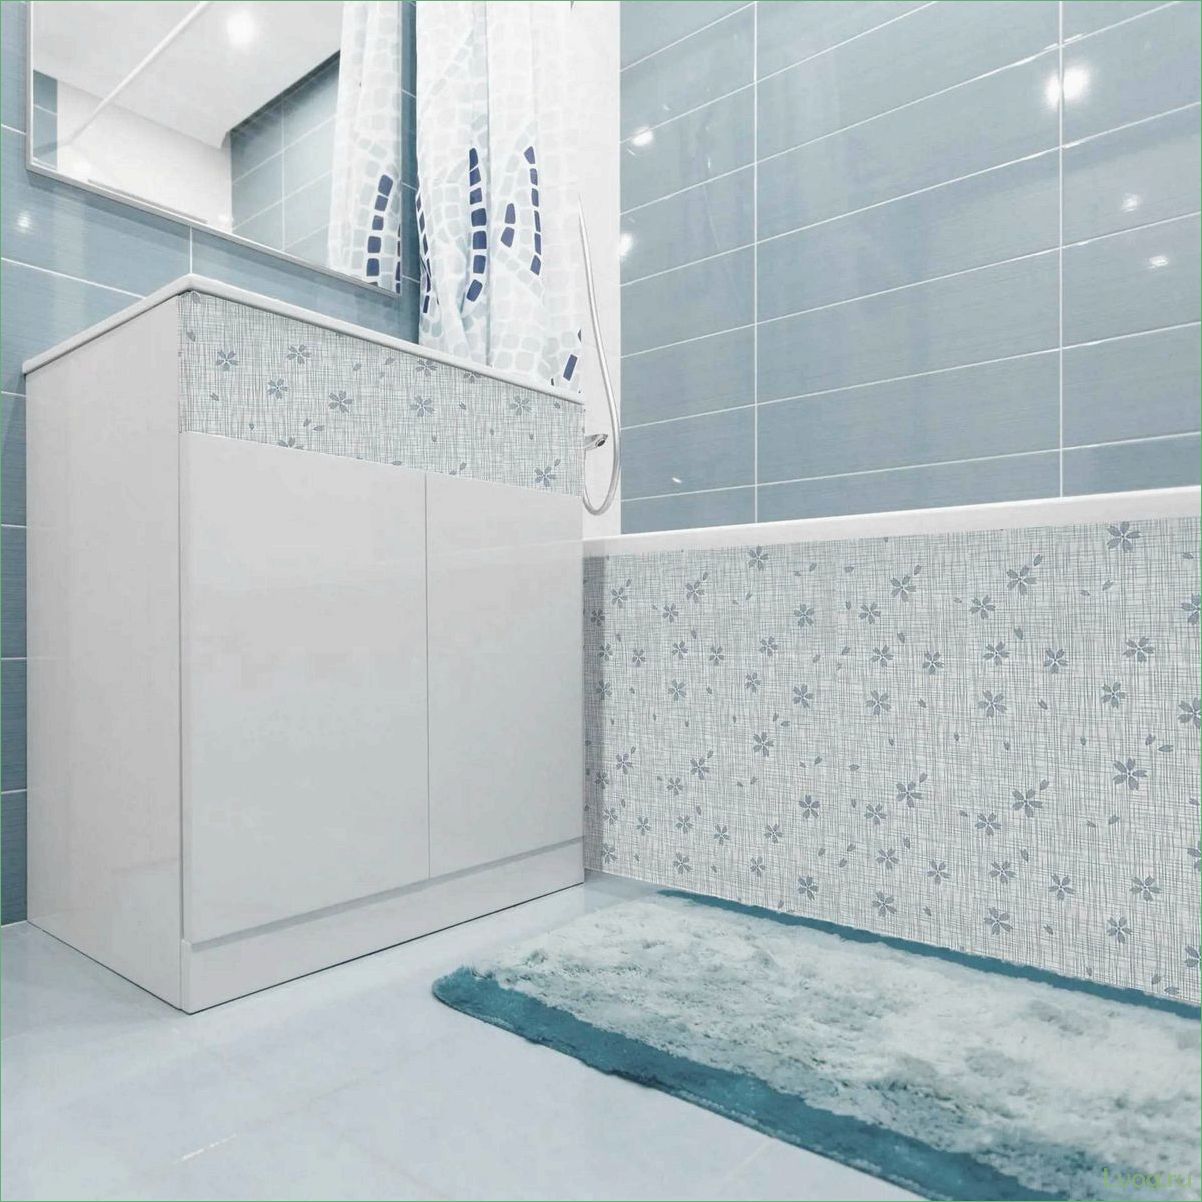 Самоклеящаяся пленка для ванной комнаты: преимущества и способы применения